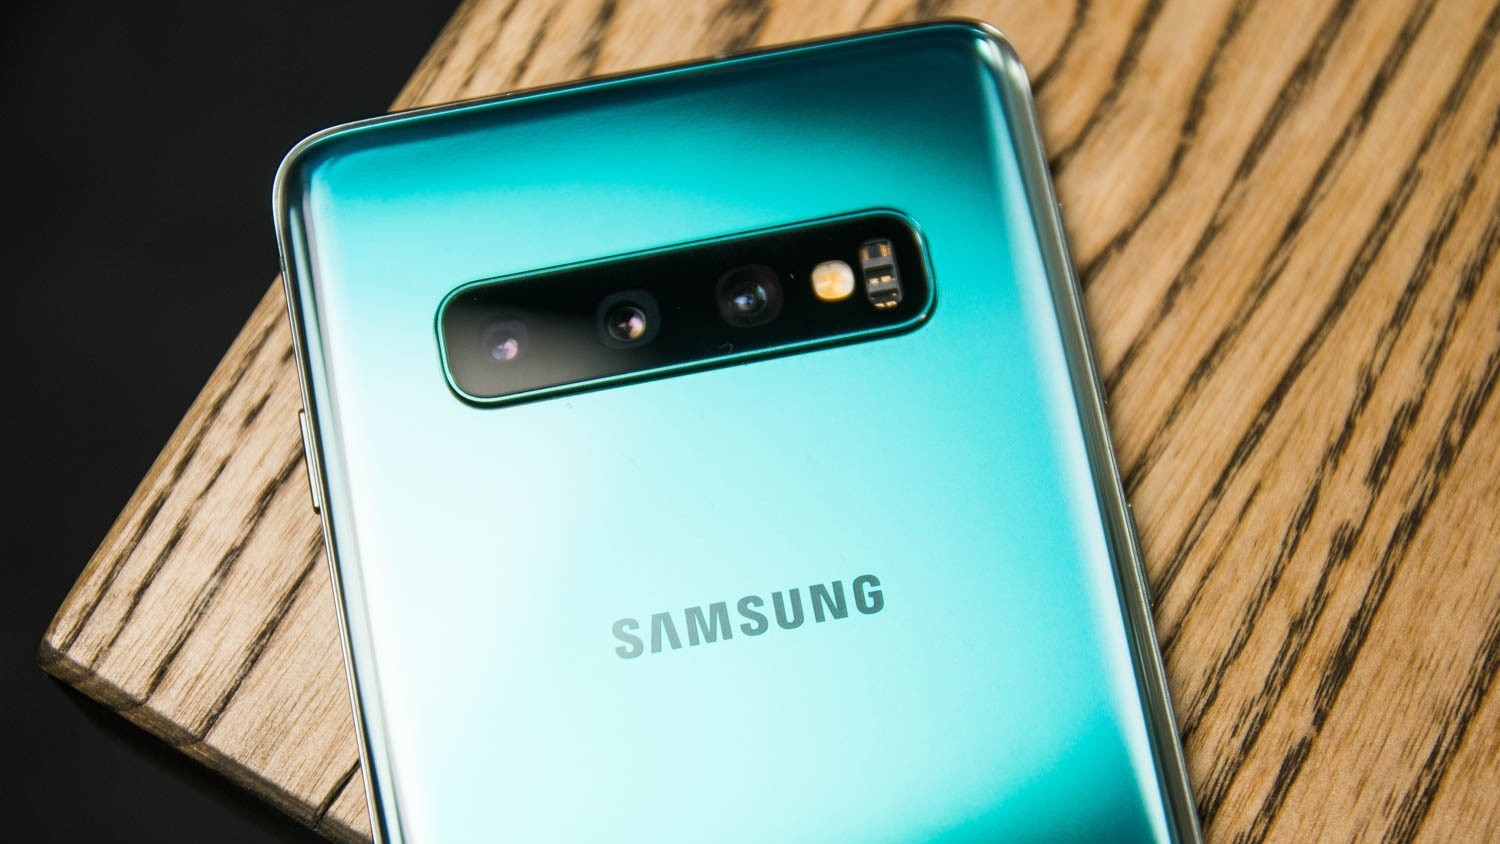 Samsung добавила ночной режим для камеры Galaxy S10